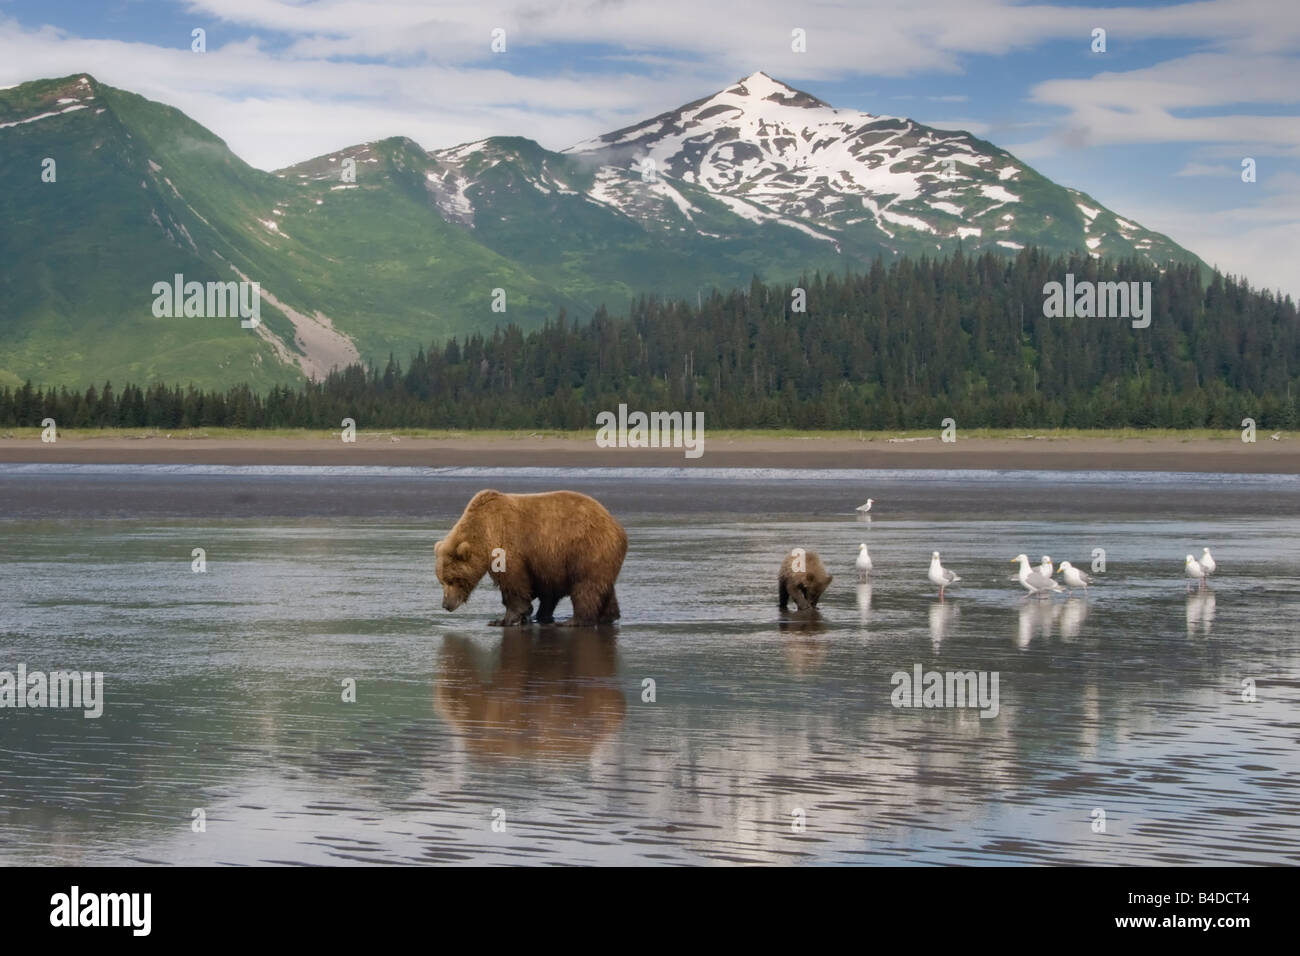 Mutter Grizzly Bear und Cub clamming & Futtersuche am Ufer des Cook Inlet mit malerischen Gebirgshintergrund Stockfoto